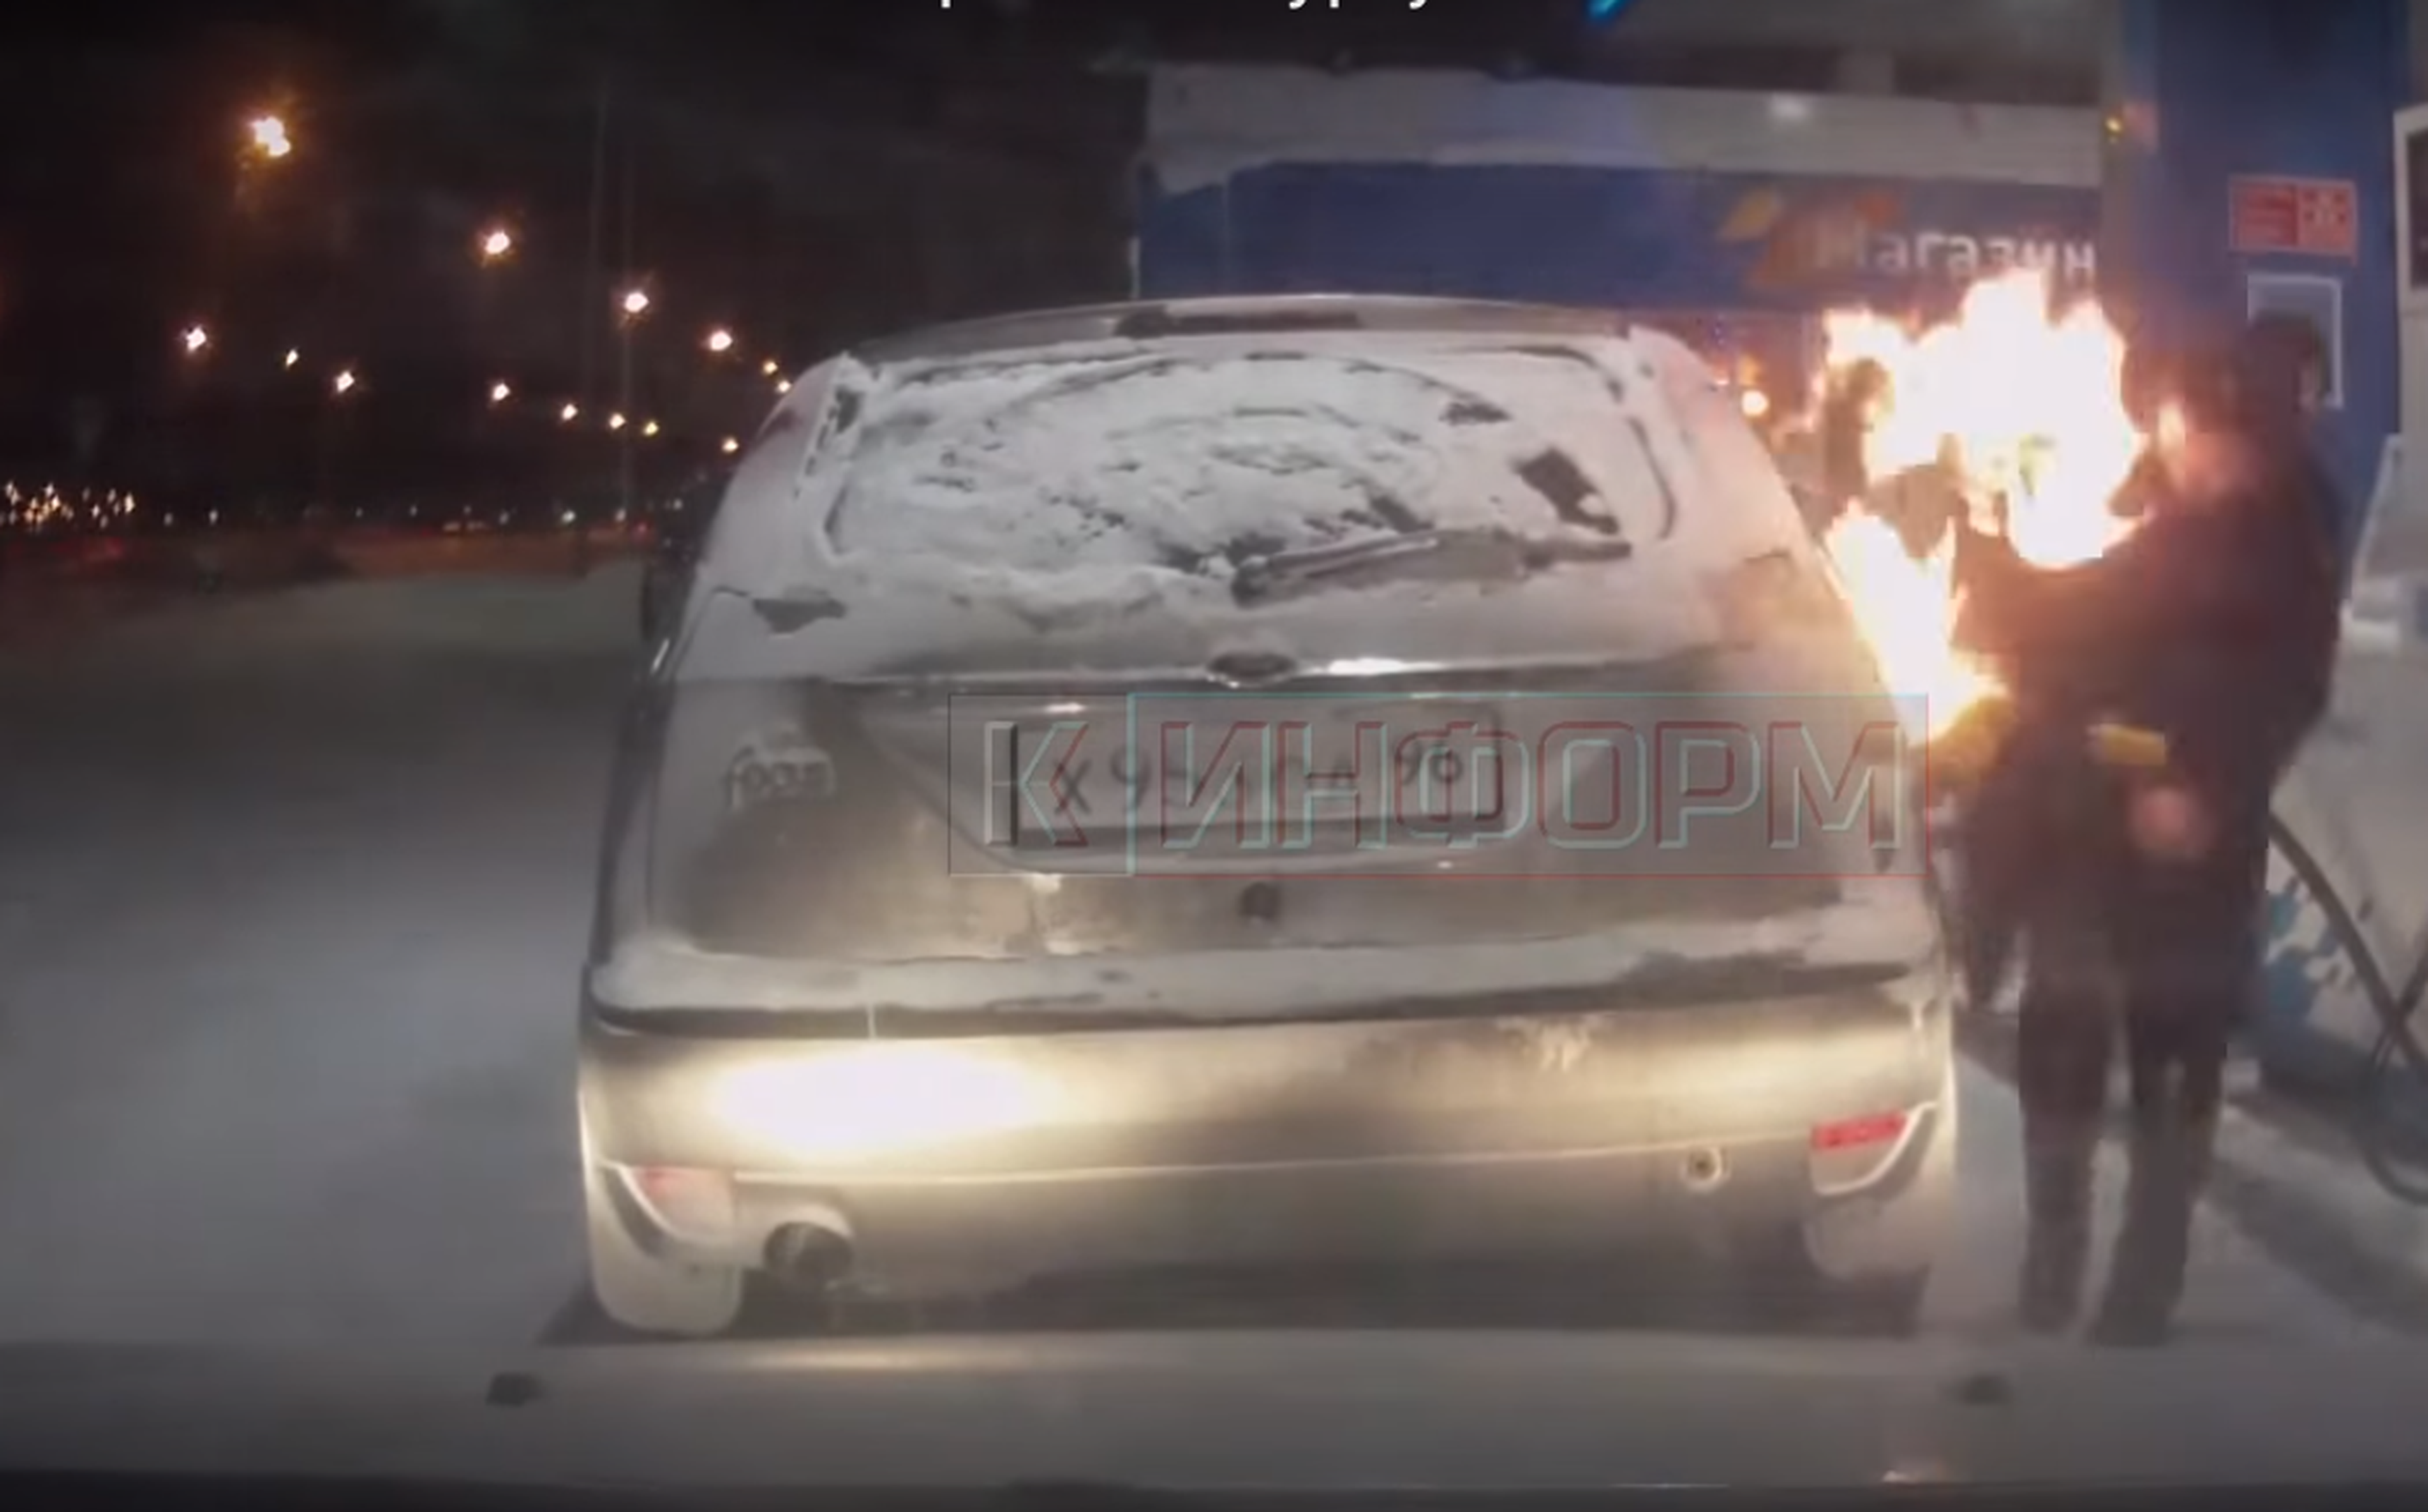 Ver para creer: prende fuego a su coche en una gasolinera